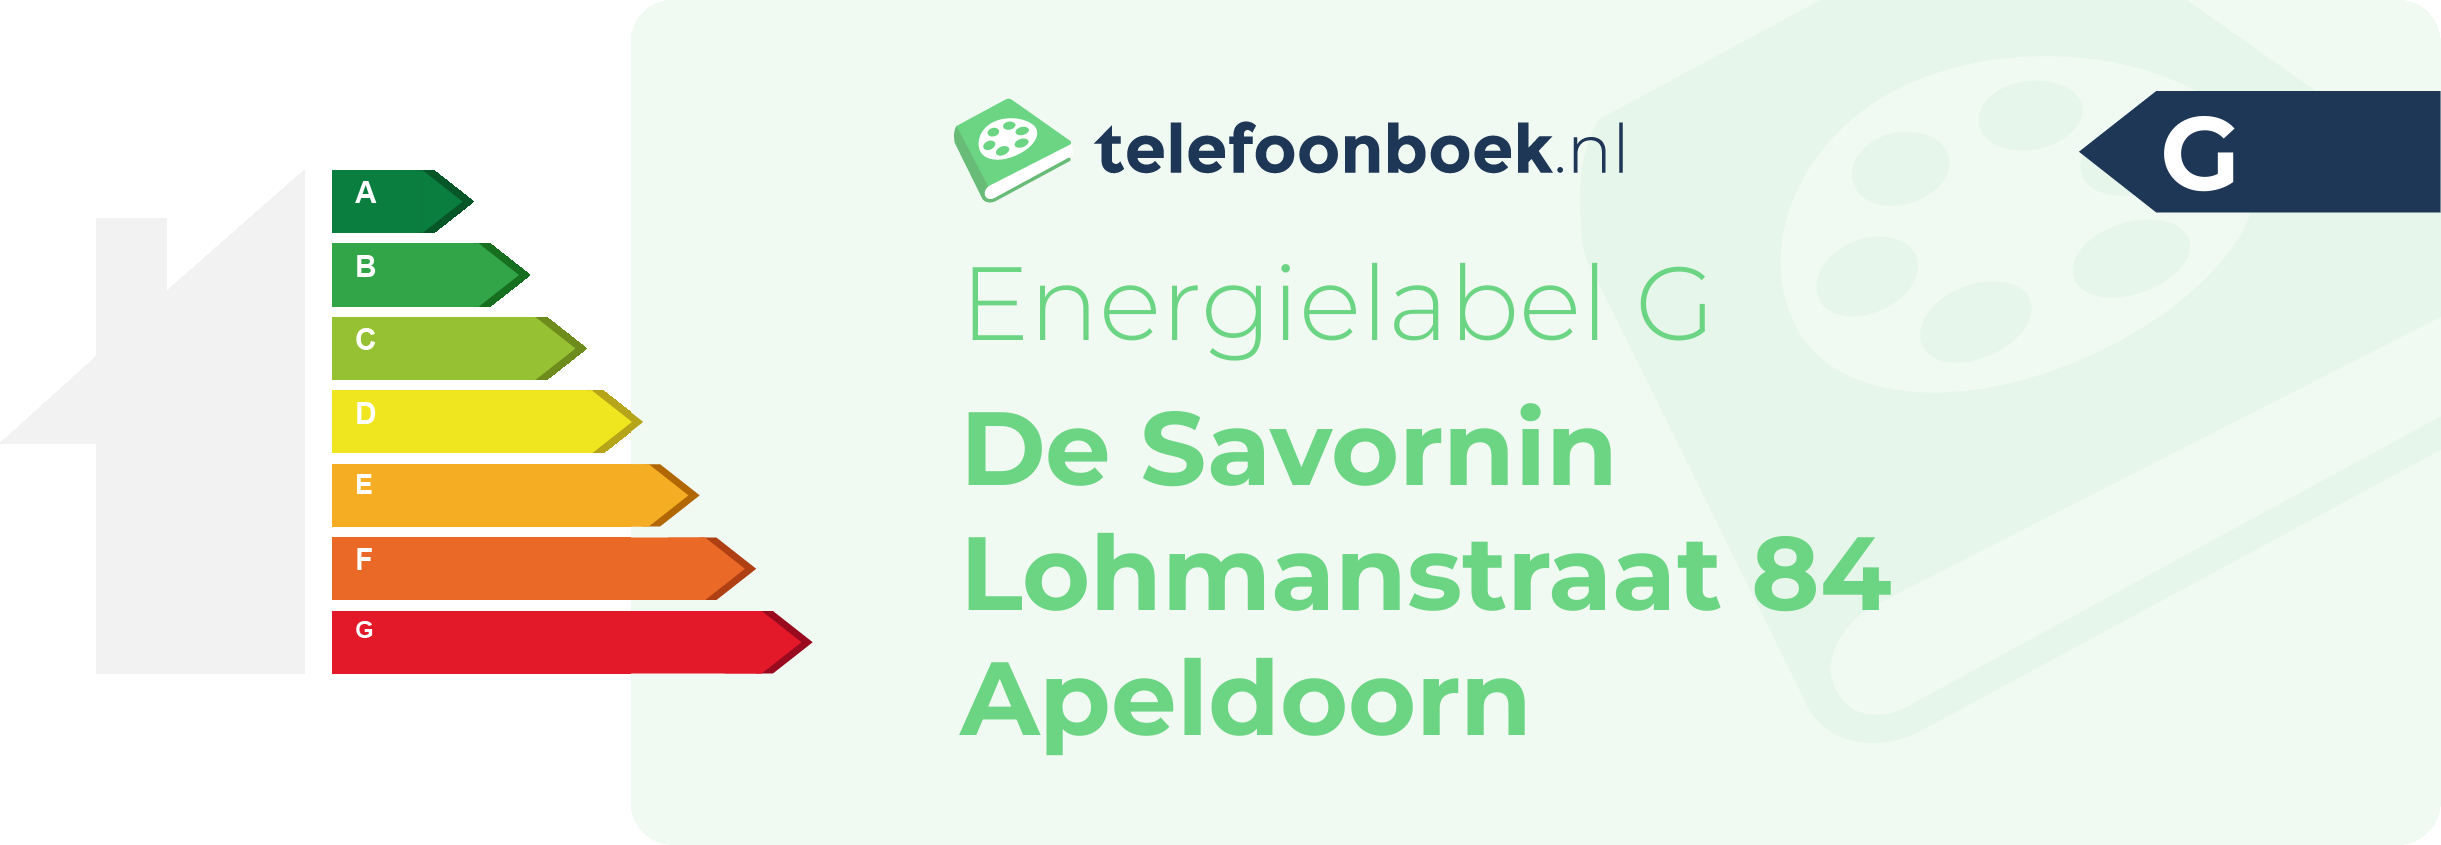 Energielabel De Savornin Lohmanstraat 84 Apeldoorn